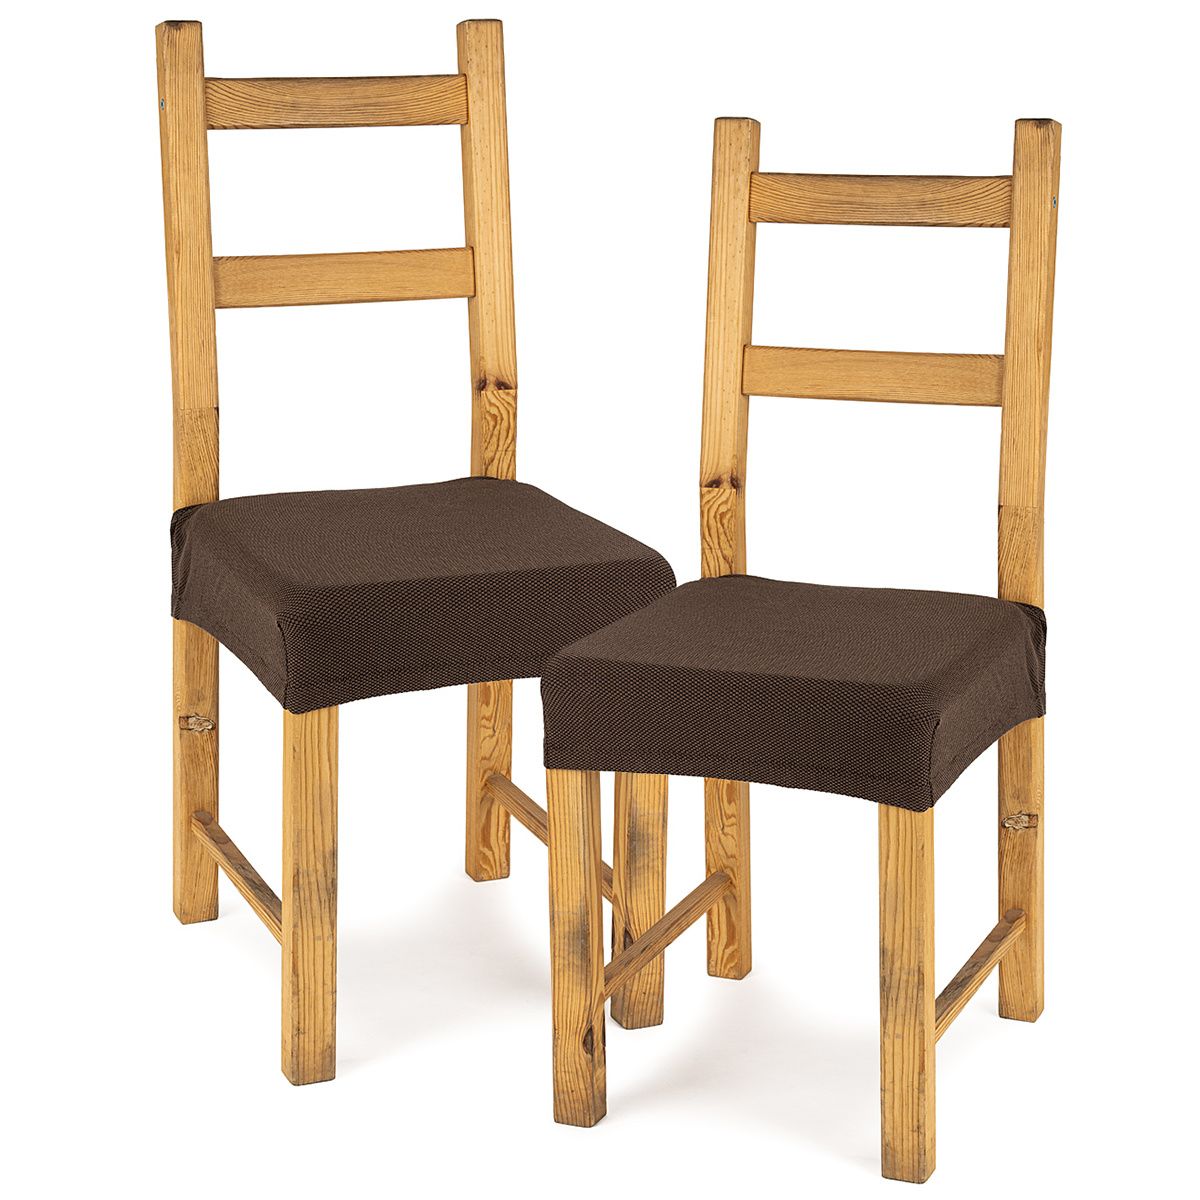 4Home Multielastický potah na sedák na židli Comfort hnědá, 40 - 50 cm, sada 2 ks - 4home.cz